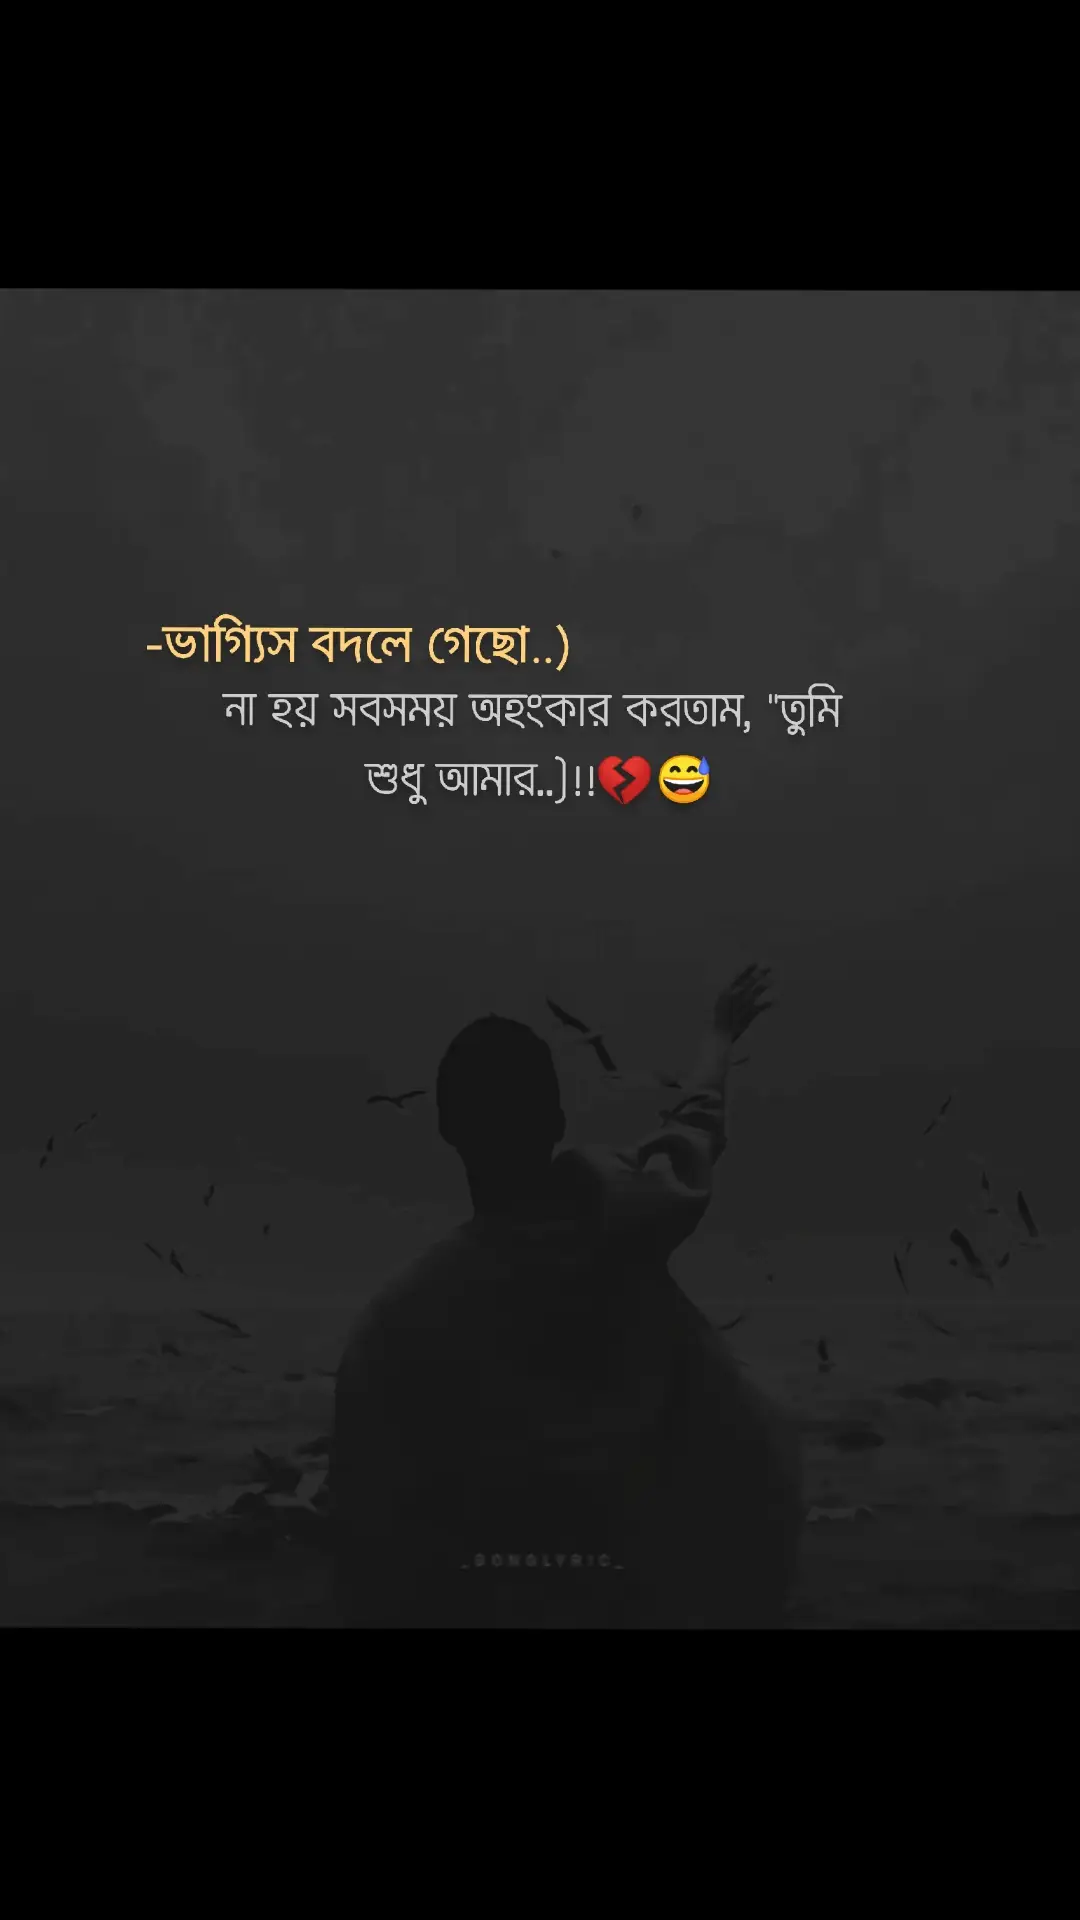 ভাগ্যিস বদলে গেছো..)!!💔🌸#foryou #foryoupage #sadstory #viral #official #trending #bdtiktokofficial #tiktokbangladesh #ইনশাআল্লাহ_যাবে_foryou_তে। 